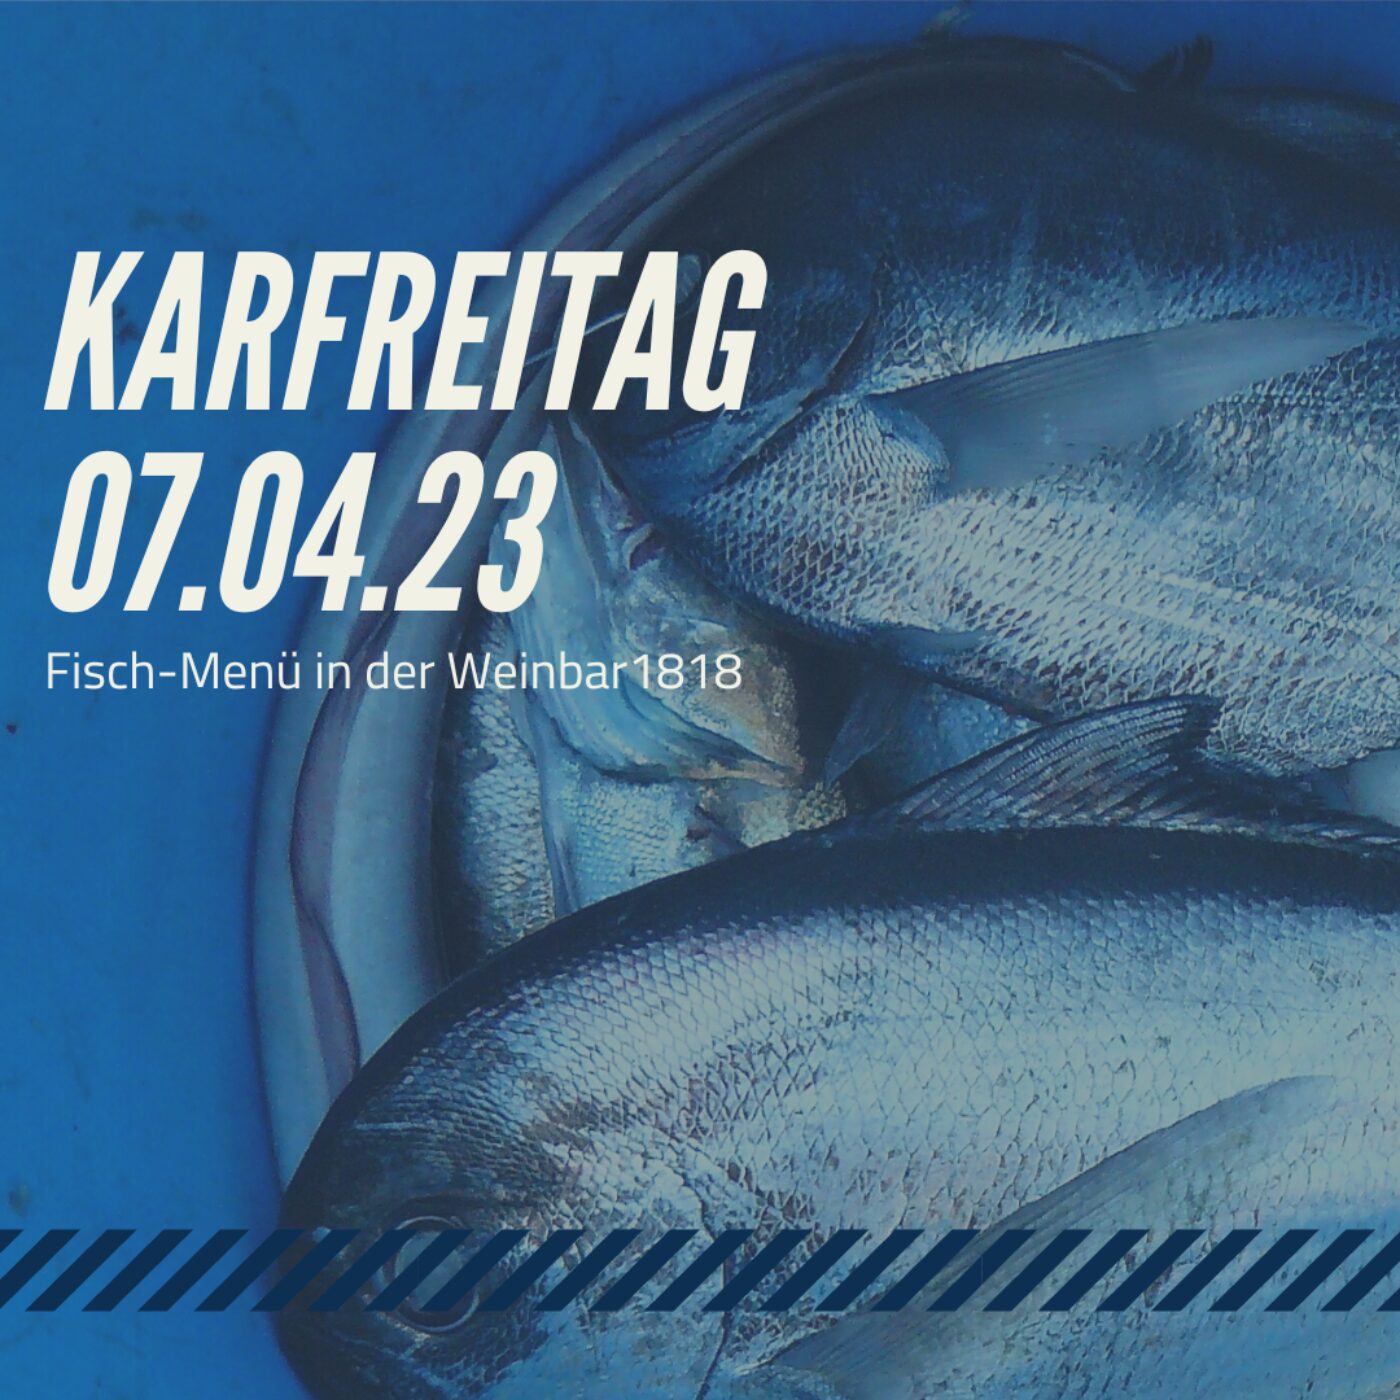 Karfreitag Fischmenü in der Weinbar1818"